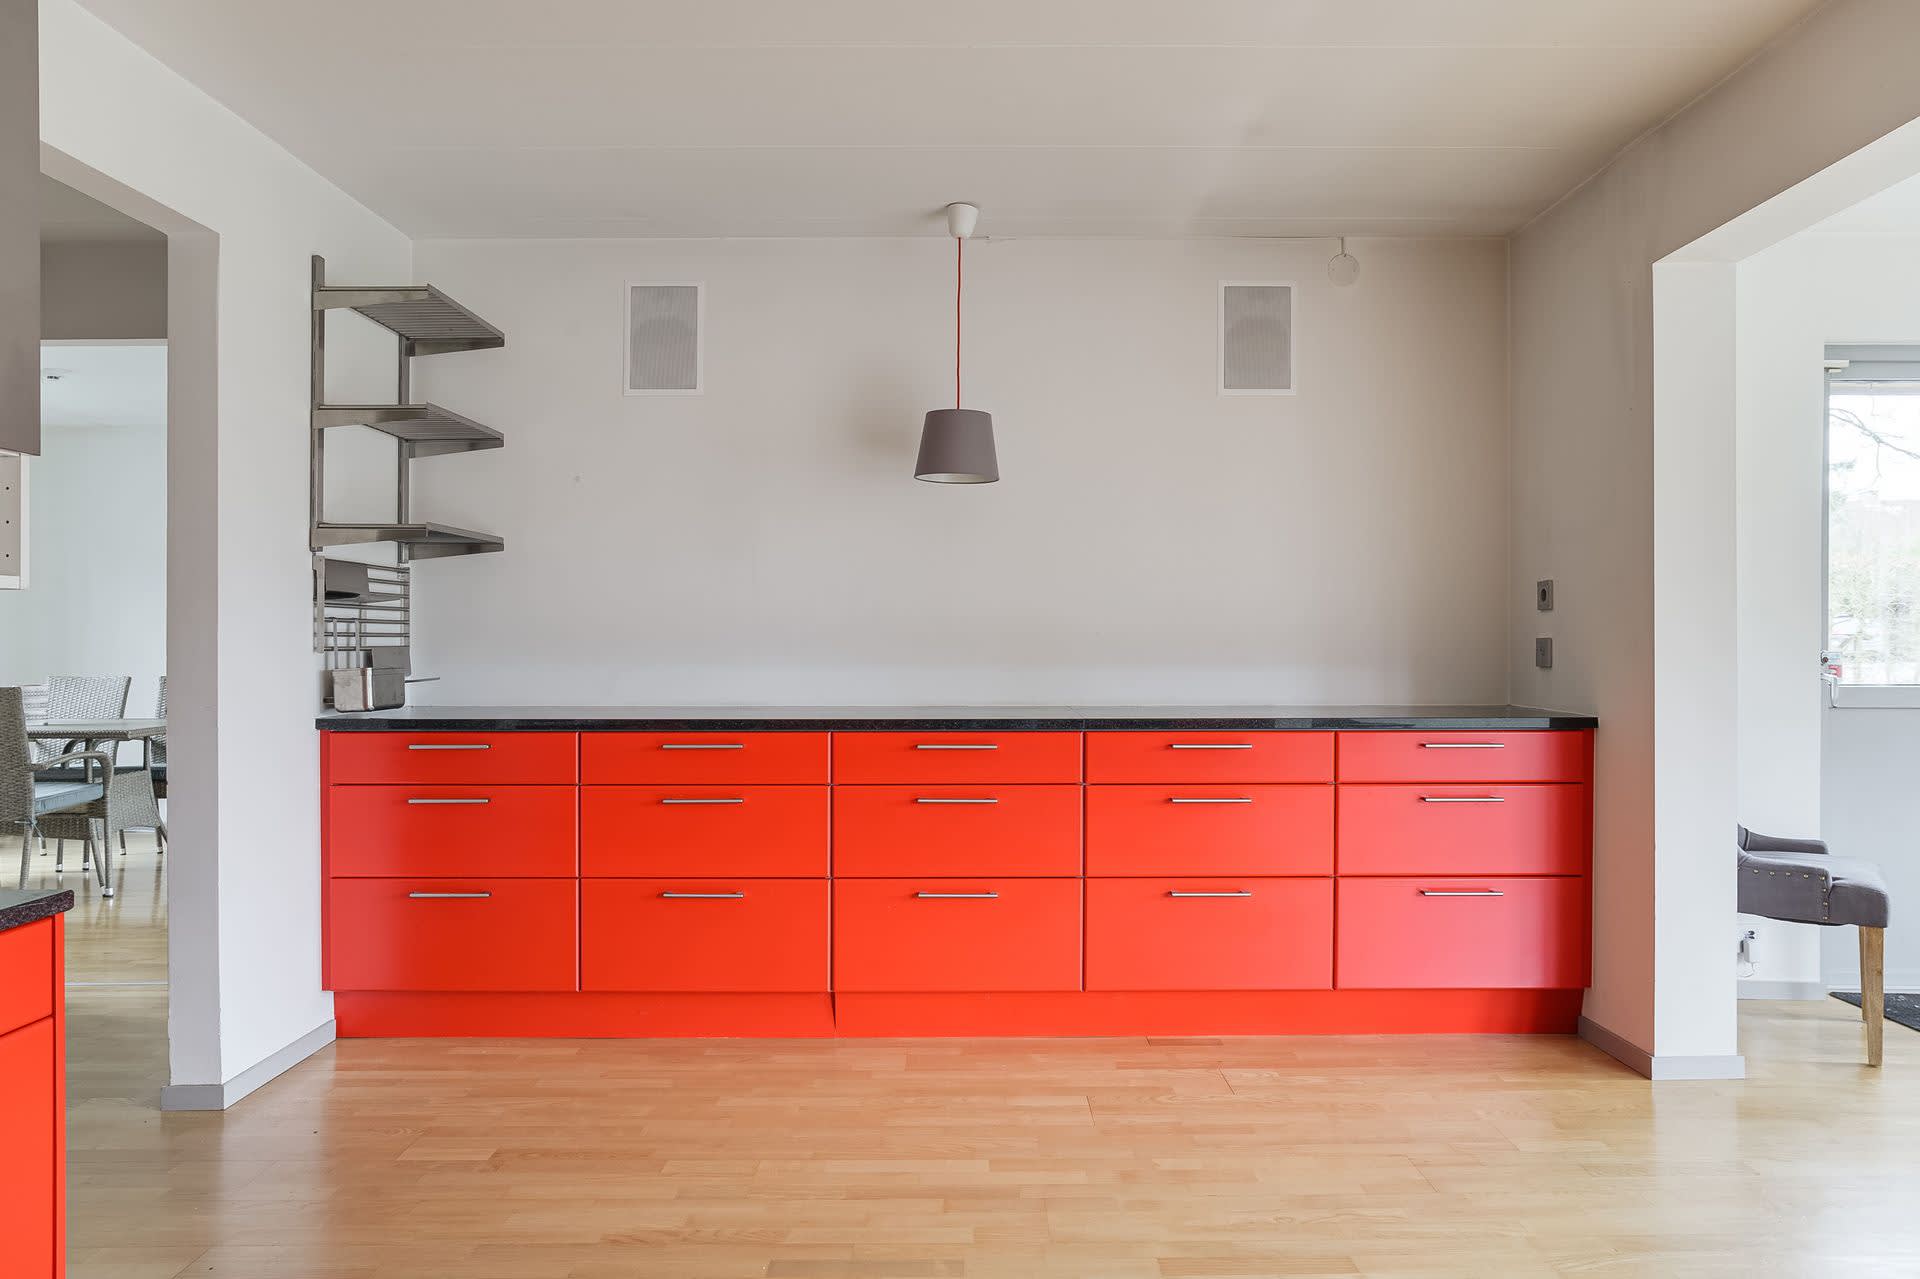 Askparkett, vita väggar och mellangrå karmar och lister - och rött kök. Offert på sprutmålning finns